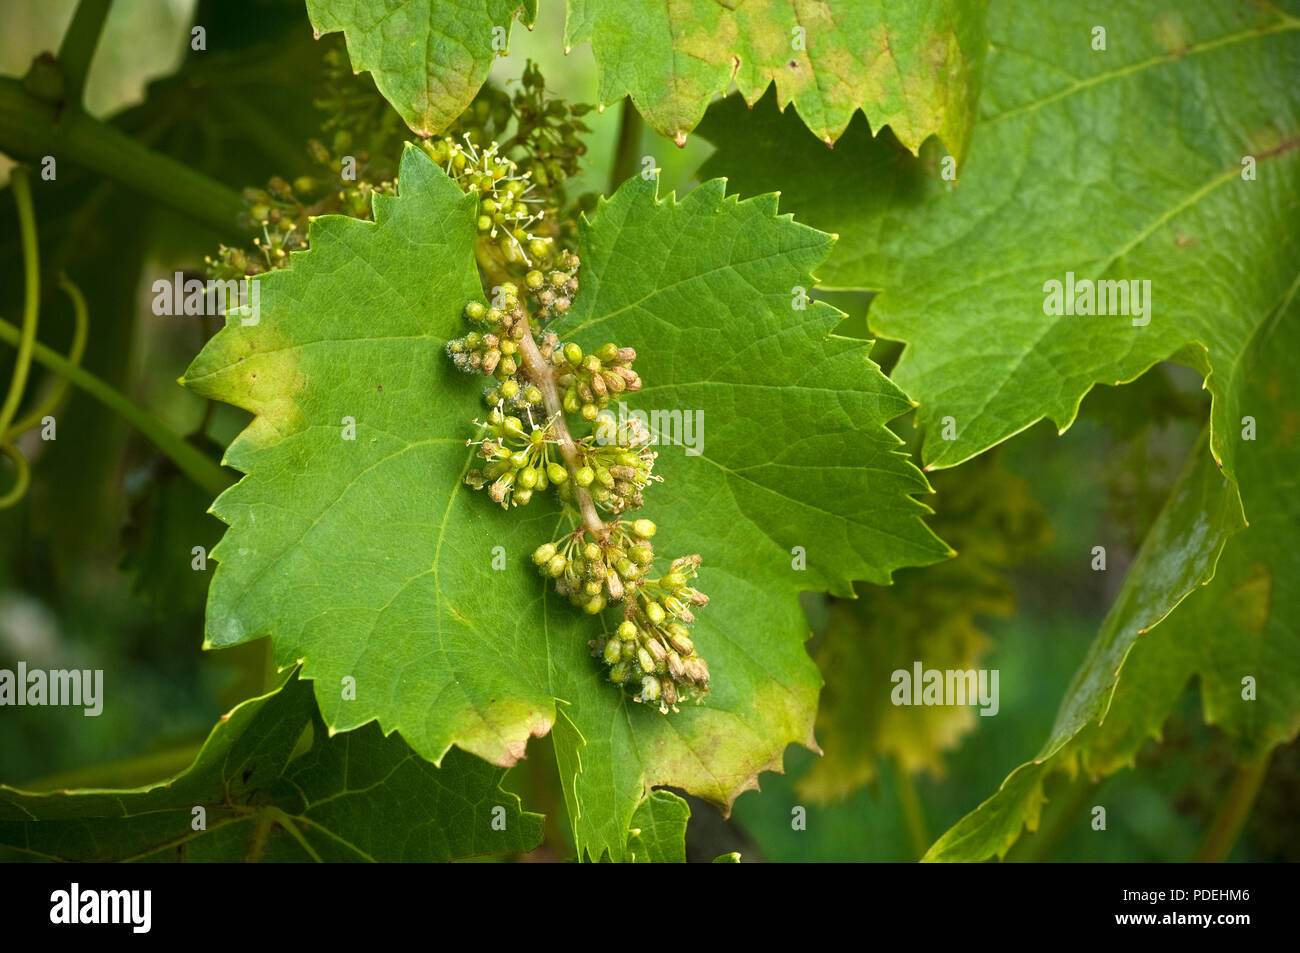 Plasmopara viticola oder Falscher Mehltau erscheint auf weinblätter als blasse öliger Fleck auf der Außenseite der ein Blatt. Stockfoto